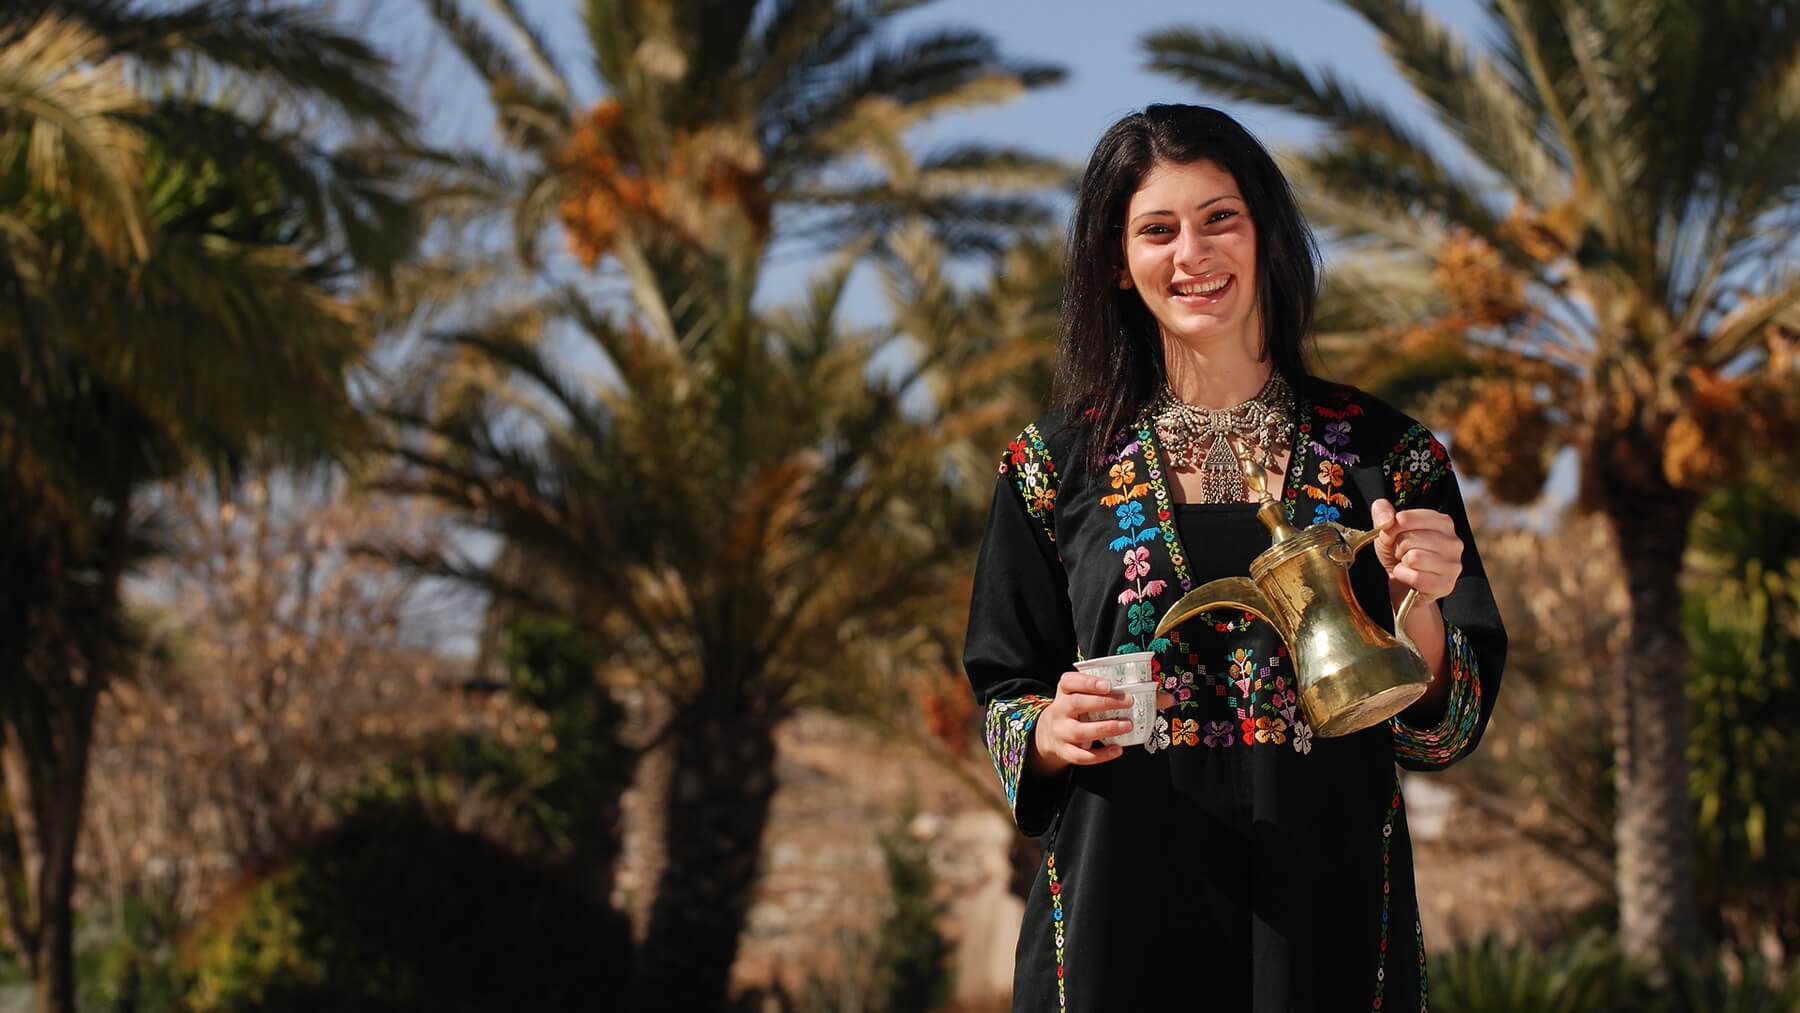 Jordaniesche Frau in traditioneller Kleidung schenkt Tee aus Kanne ein.